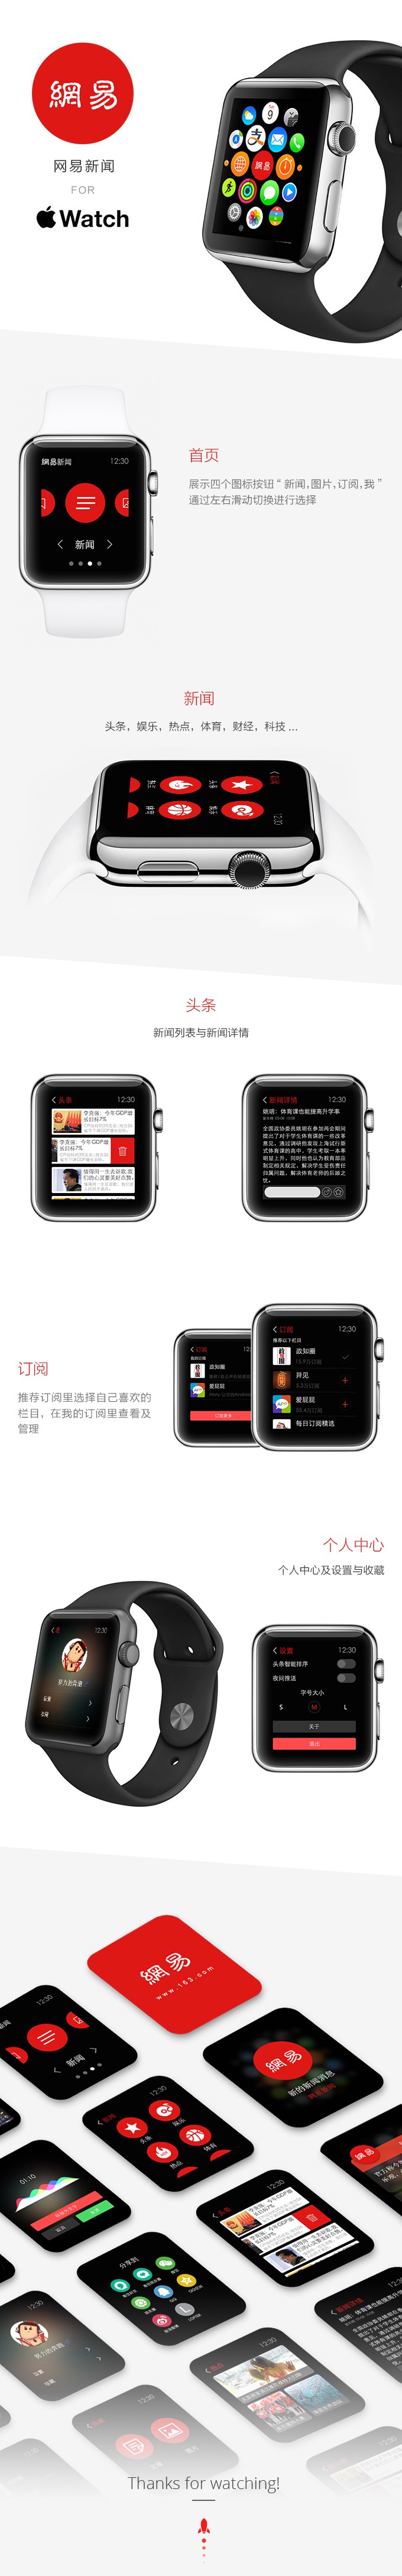 Apple Watch (35)